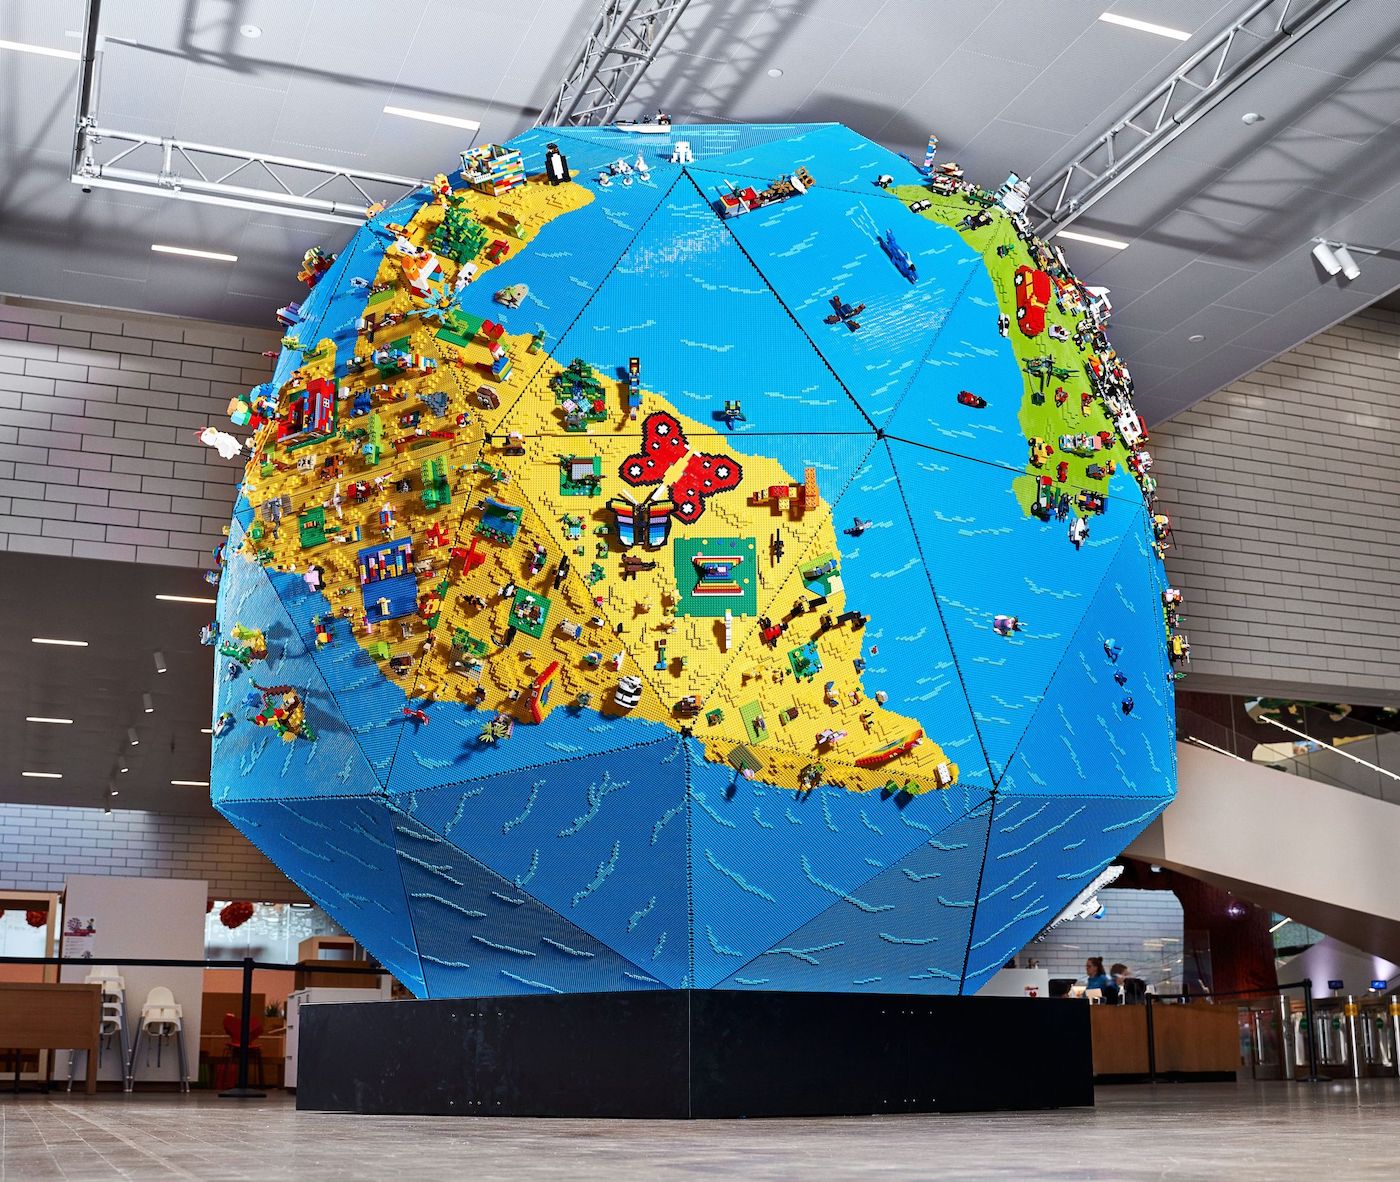 LEGO dévoile un globe géant qui contient des créations d'enfants pendant le confinement